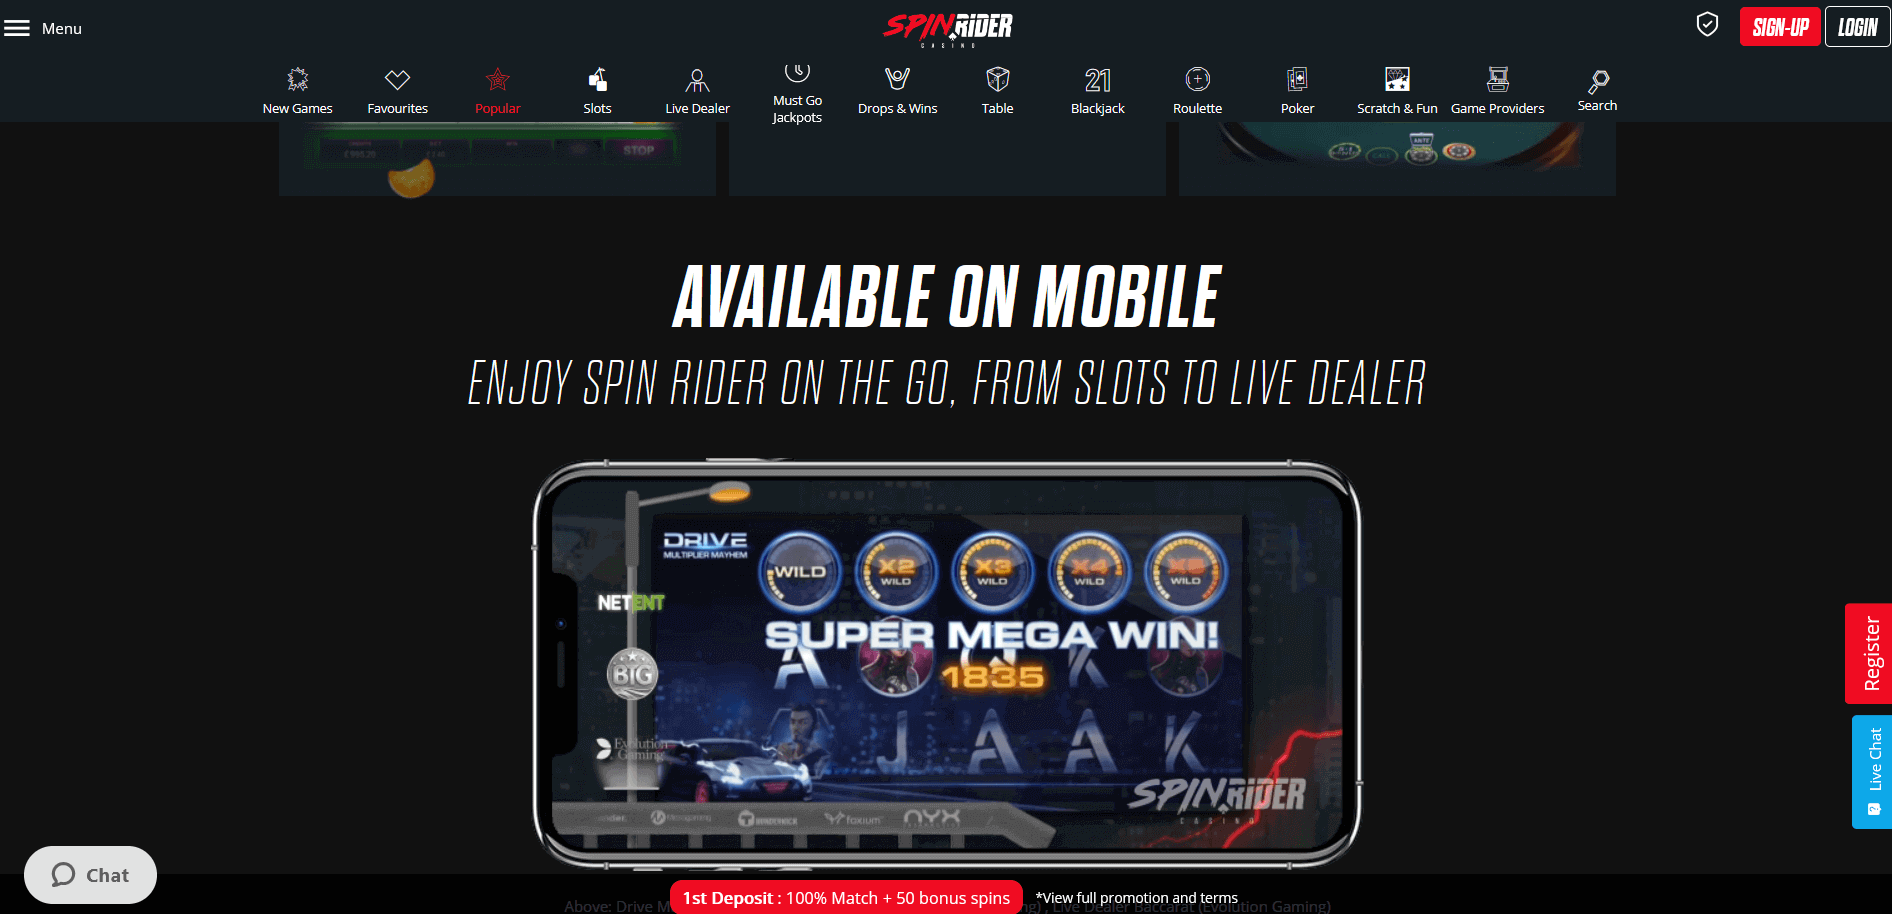 Spin Rider casino mobile compatibility